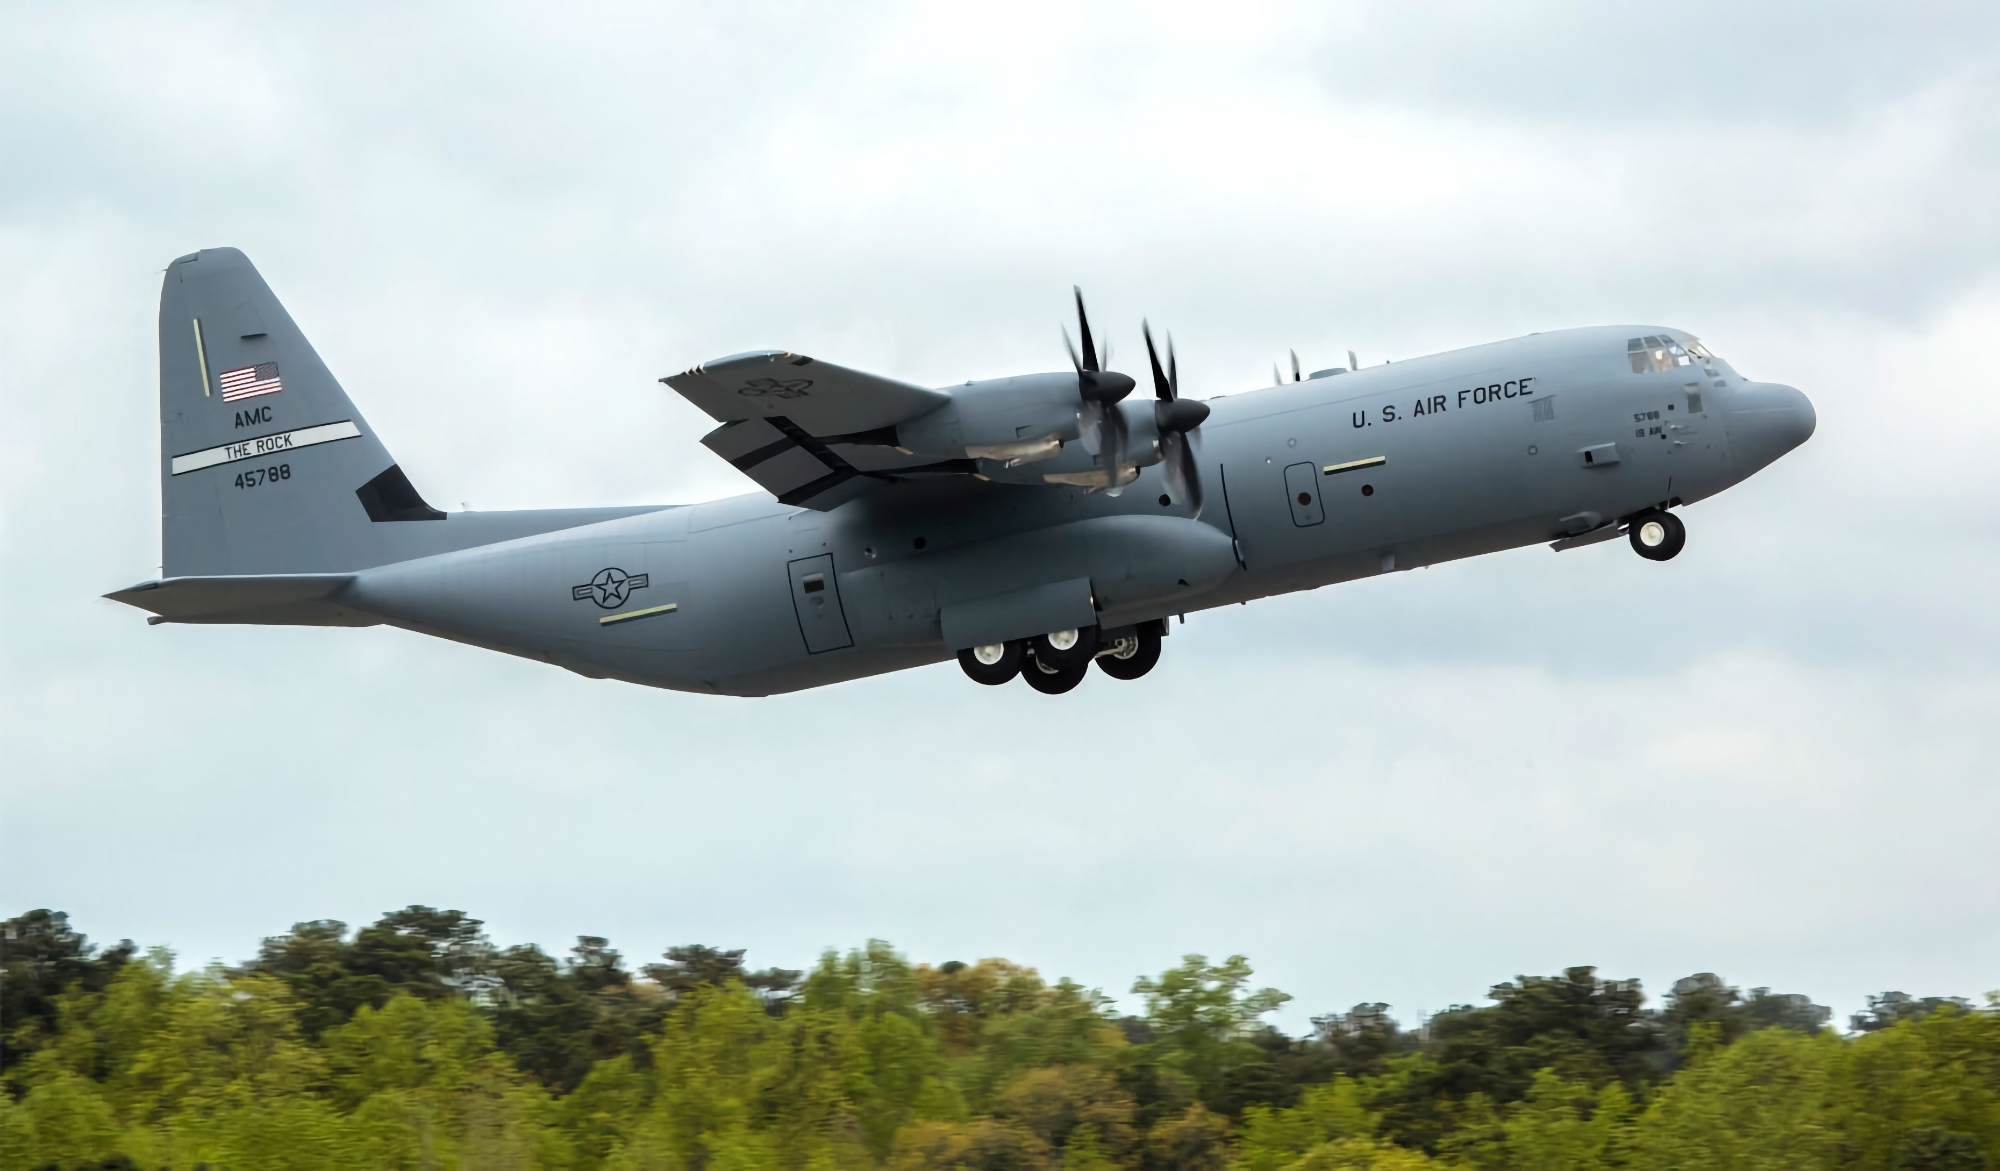 Contratto da 390 milioni di dollari: le Filippine acquistano un aereo da trasporto militare C-130 Super Hercules da Lockheed Martin